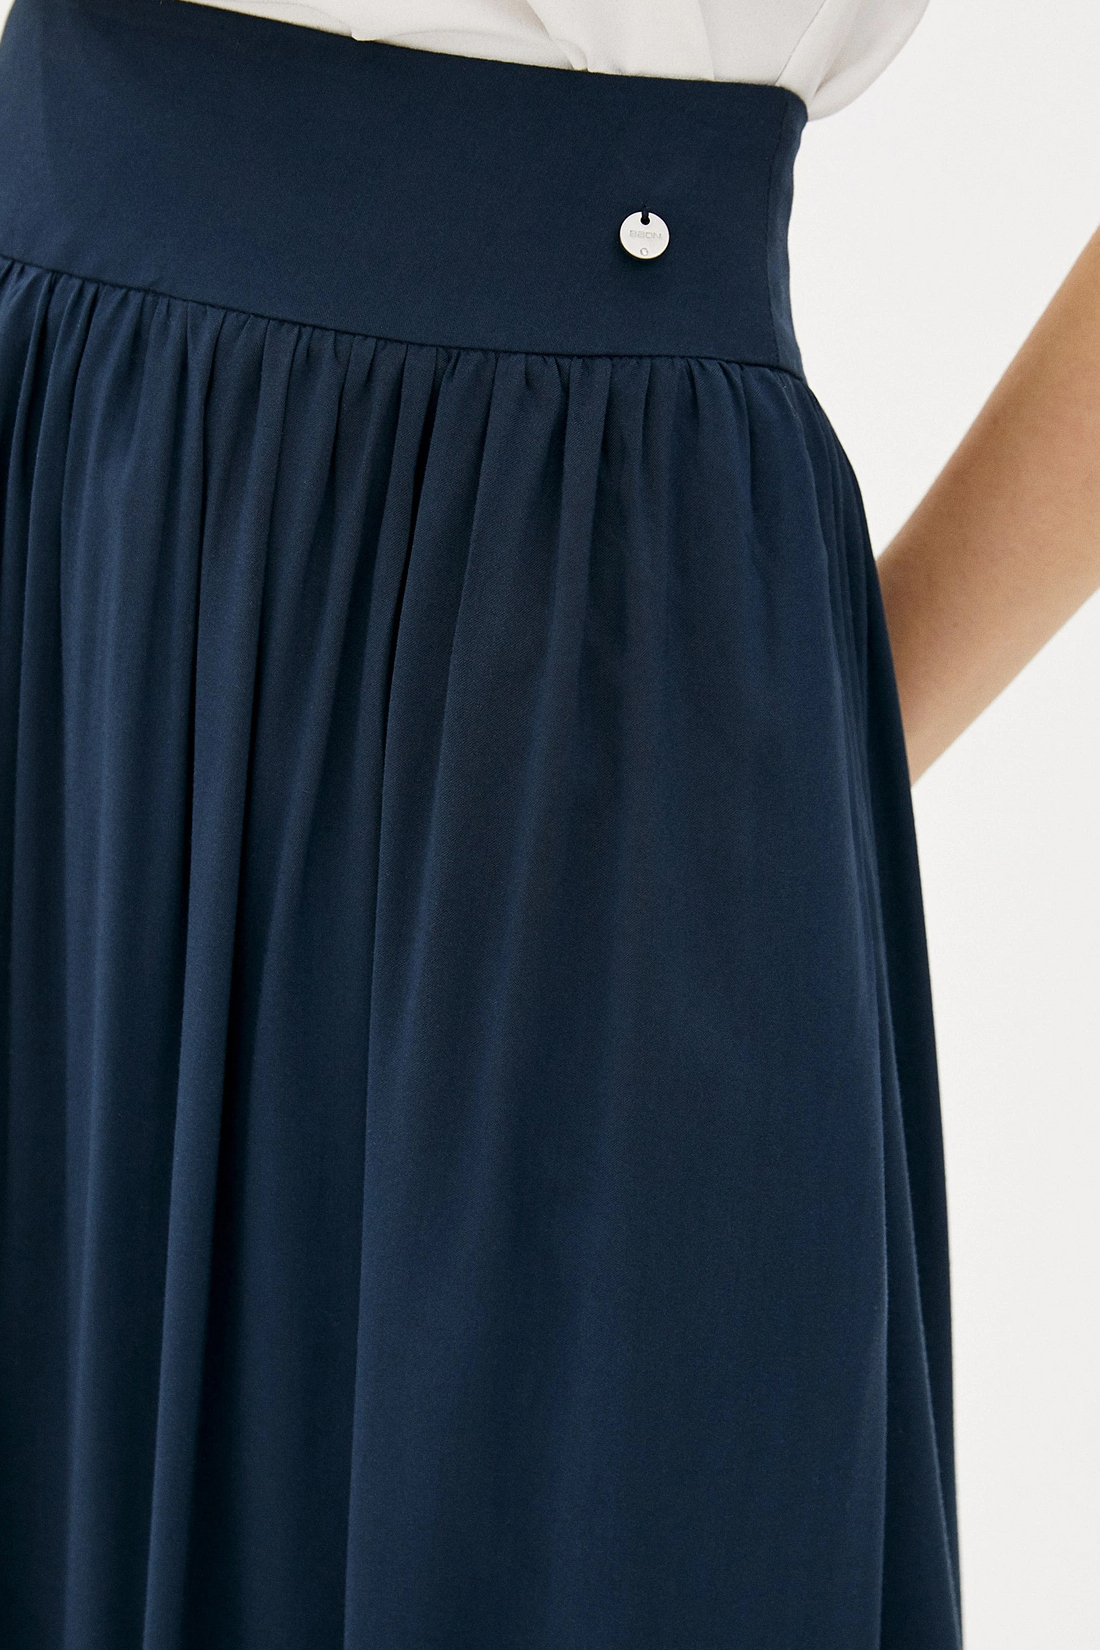 Длинная юбка на кокетке (арт. baon B470027), размер XS, цвет синий Длинная юбка на кокетке (арт. baon B470027) - фото 3